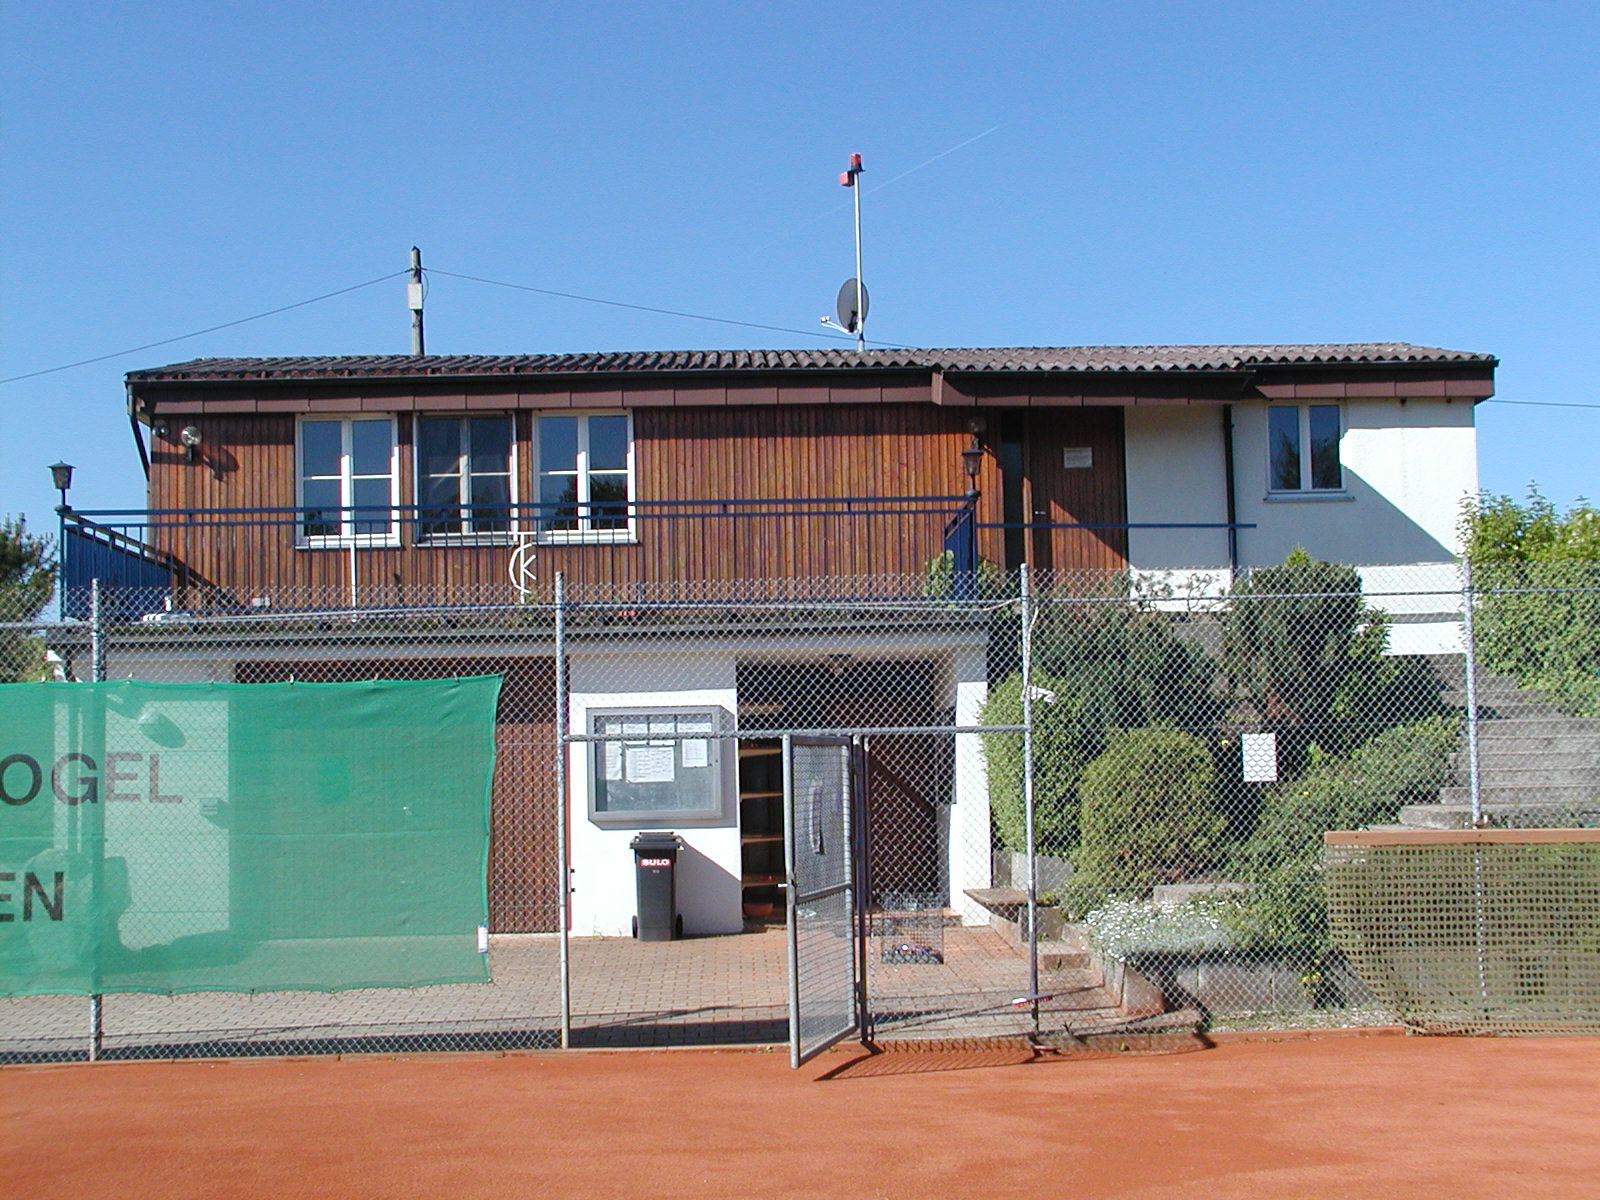  Tennisheim 